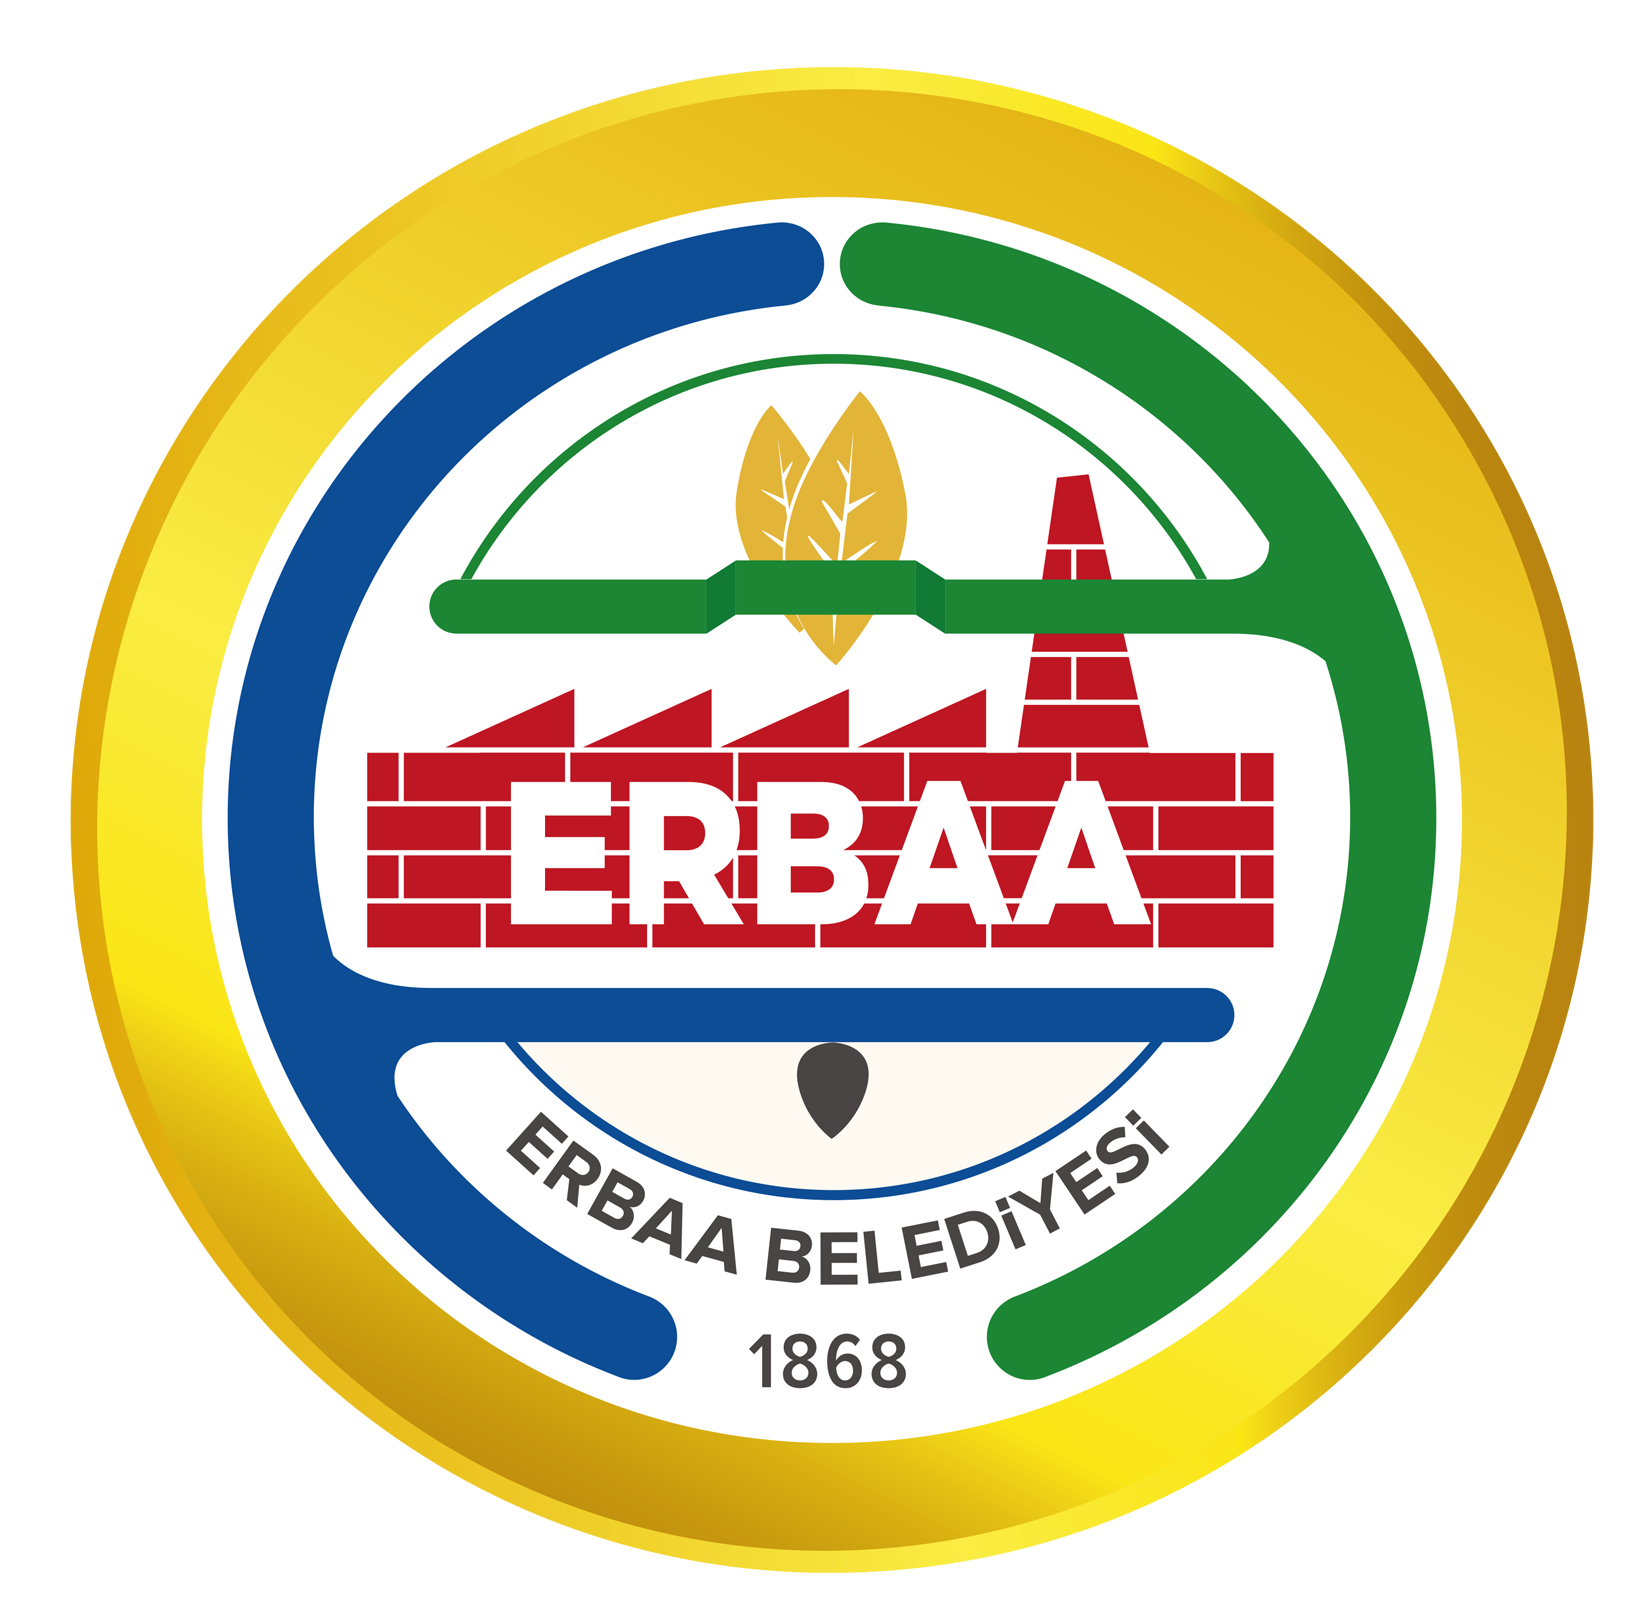 Erbaa belediyesi